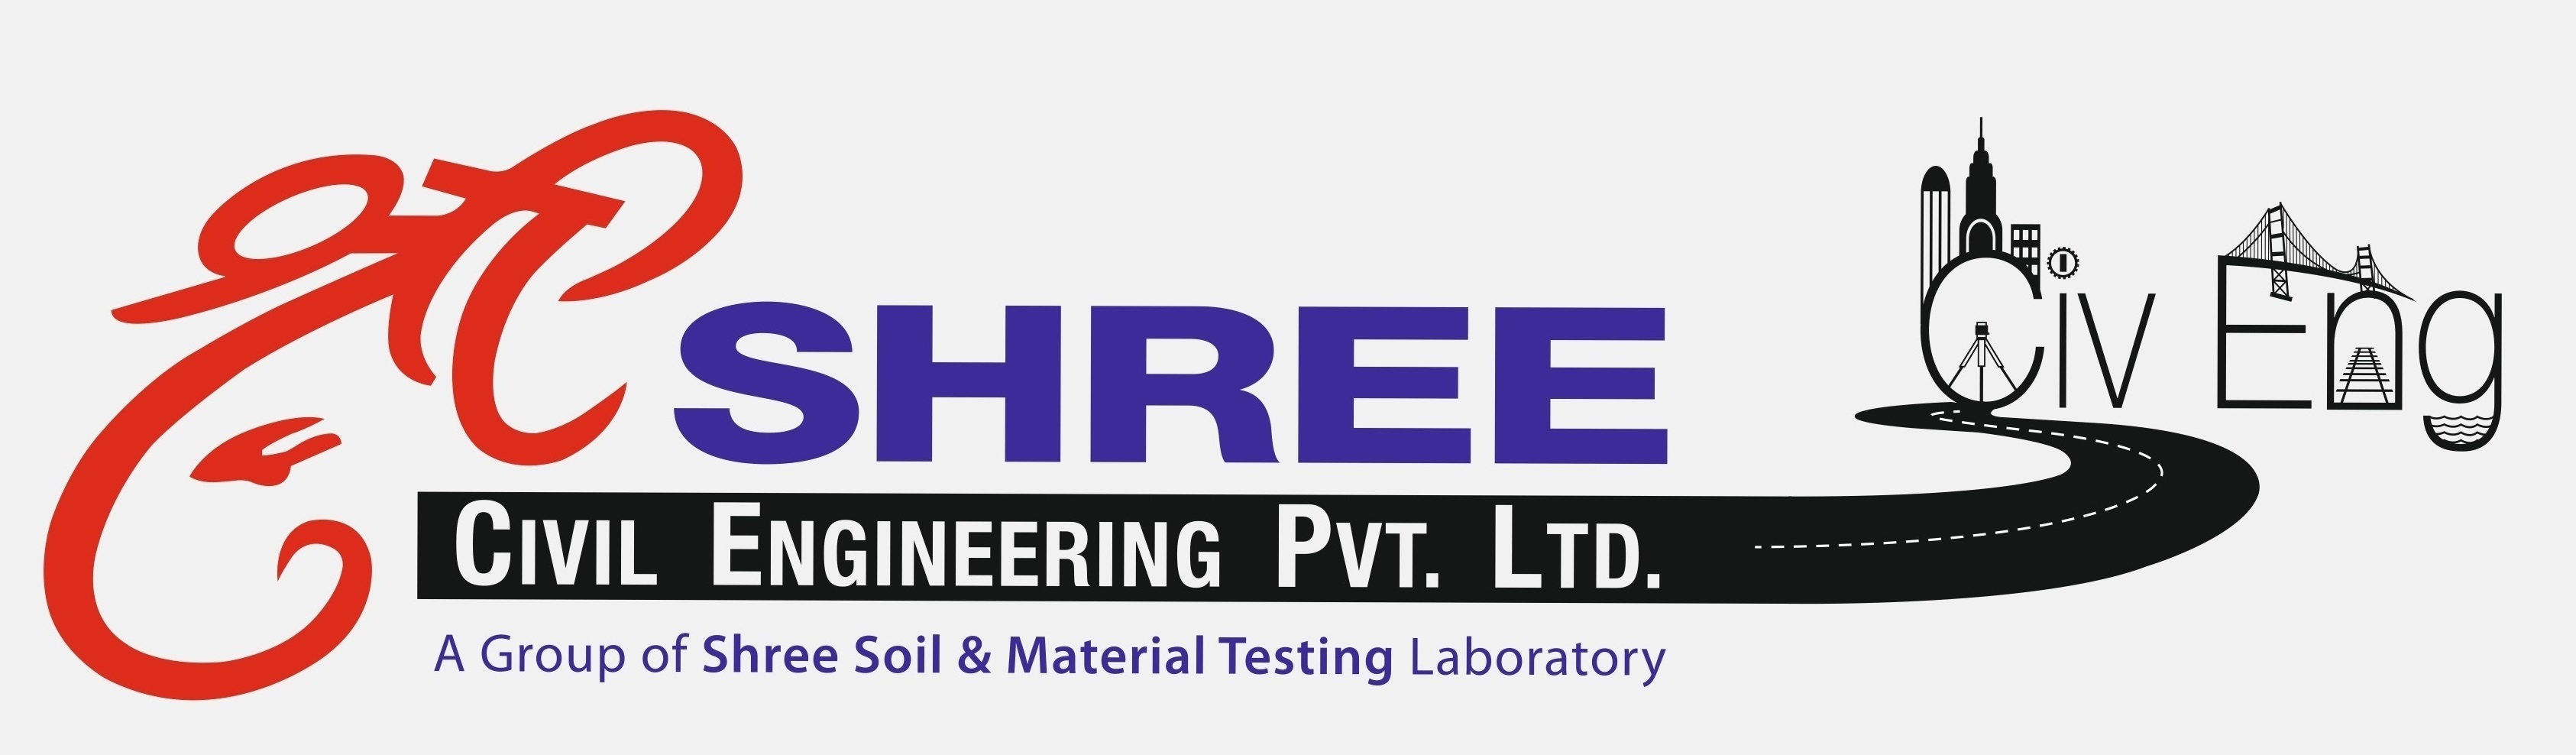 Shree Civil Engineering Pvt. Ltd.